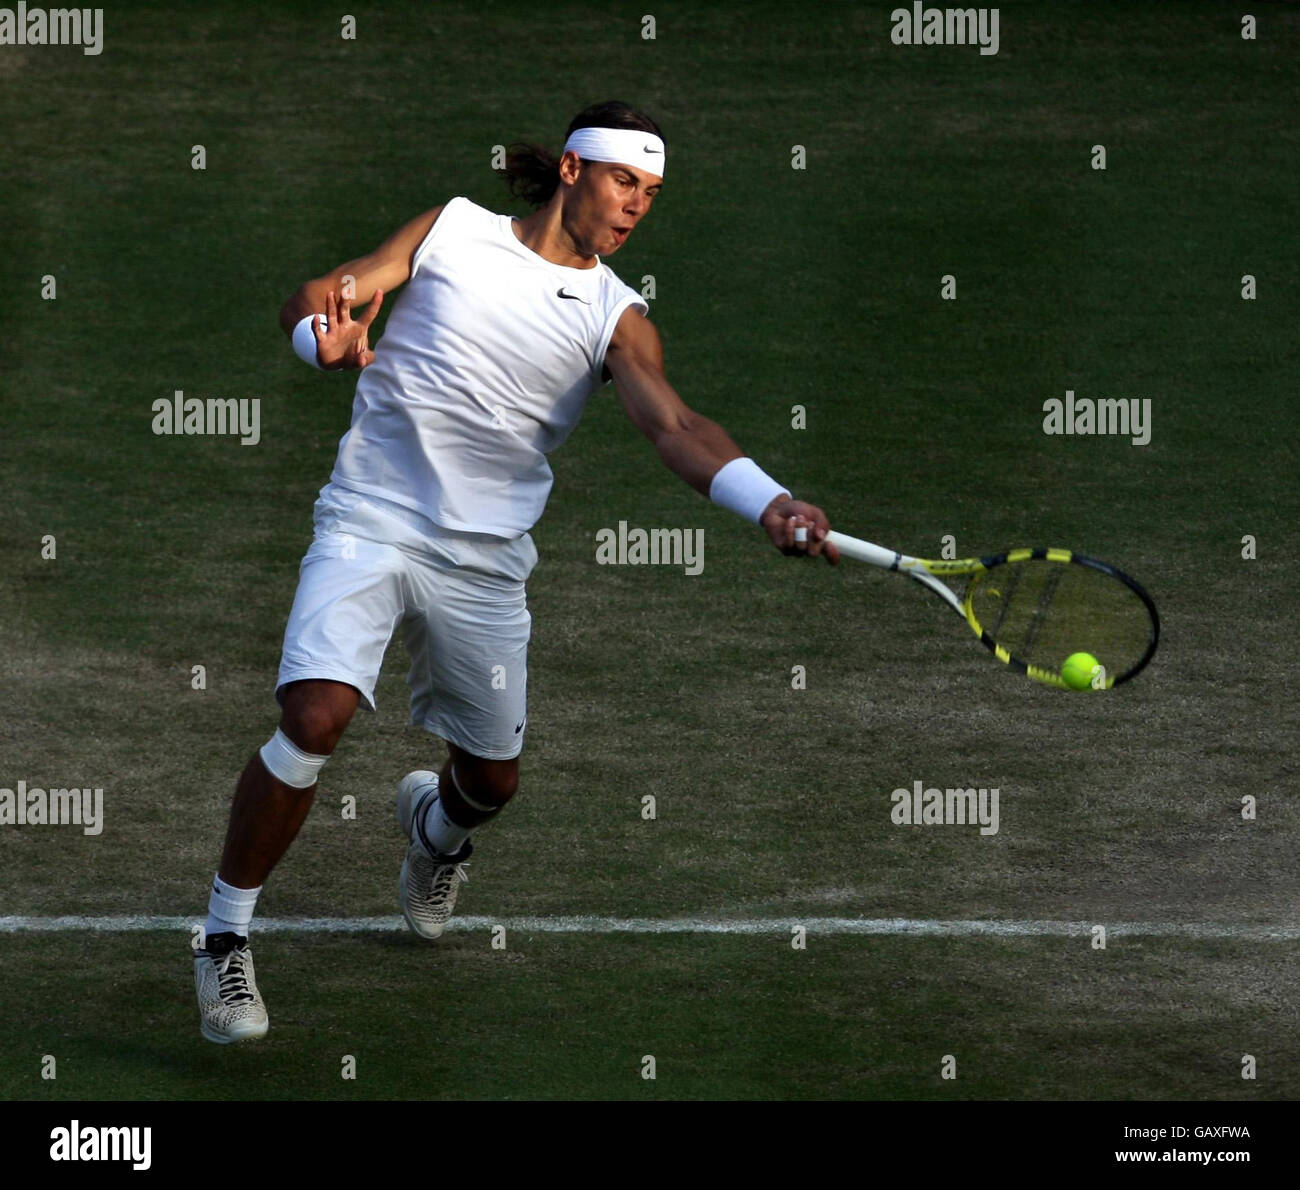 Il spagnolo Rafael Nadal in azione contro il tedesco Nicolas Kiefer durante i Campionati di Wimbledon 2008 presso l'All England Tennis Club di Wimbledon. Foto Stock